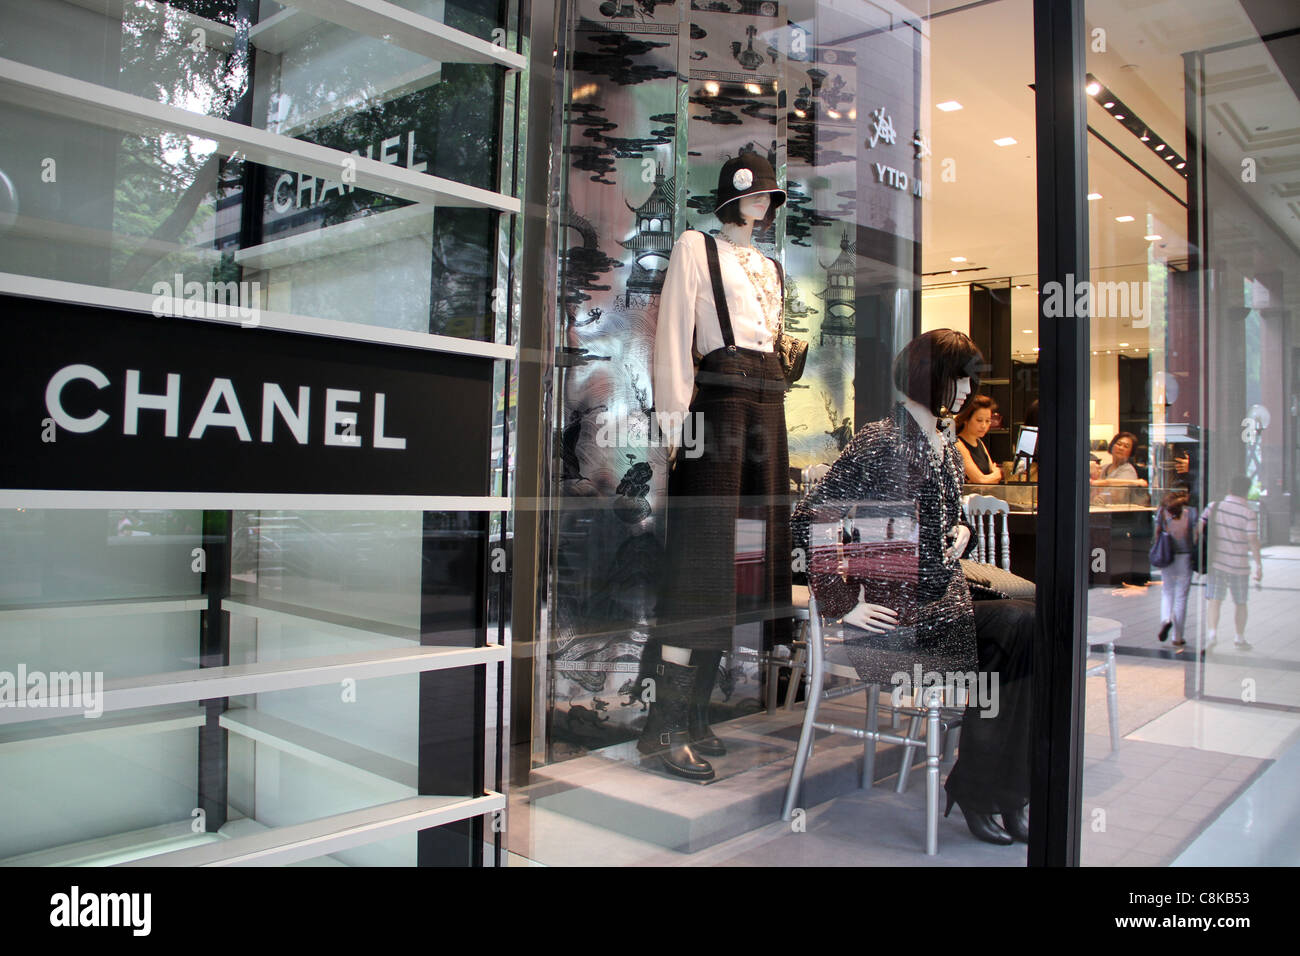 CHANEL Opens Impressive Street-Facing Calgary Boutique [Photos]